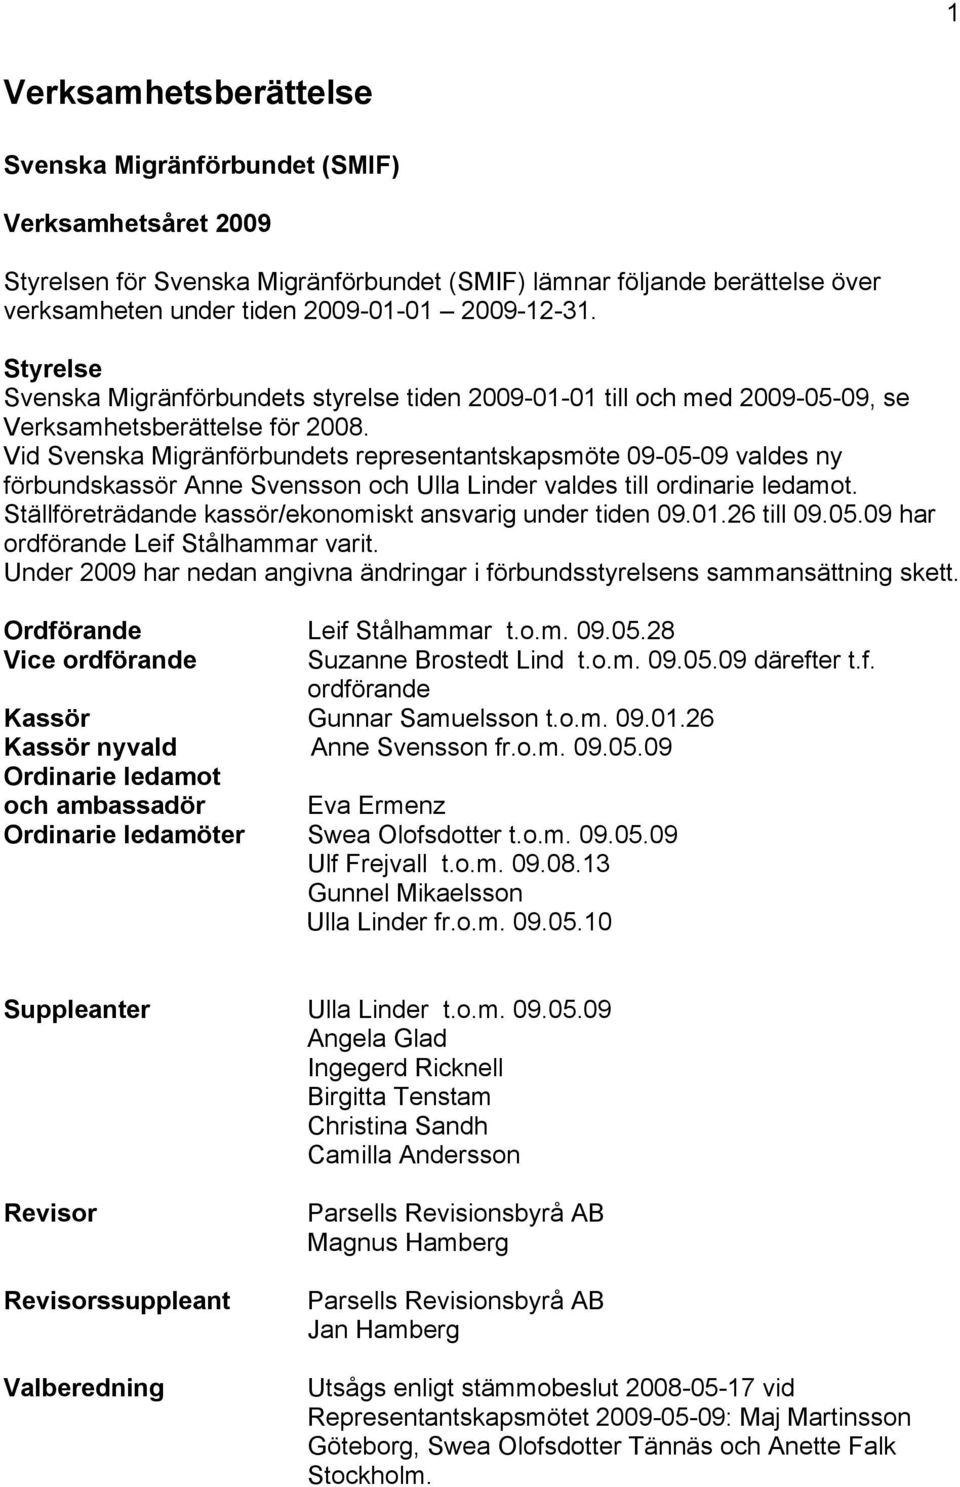 Vid Svenska Migränförbundets representantskapsmöte 09-05-09 valdes ny förbundskassör Anne Svensson och Ulla Linder valdes till ordinarie ledamot.